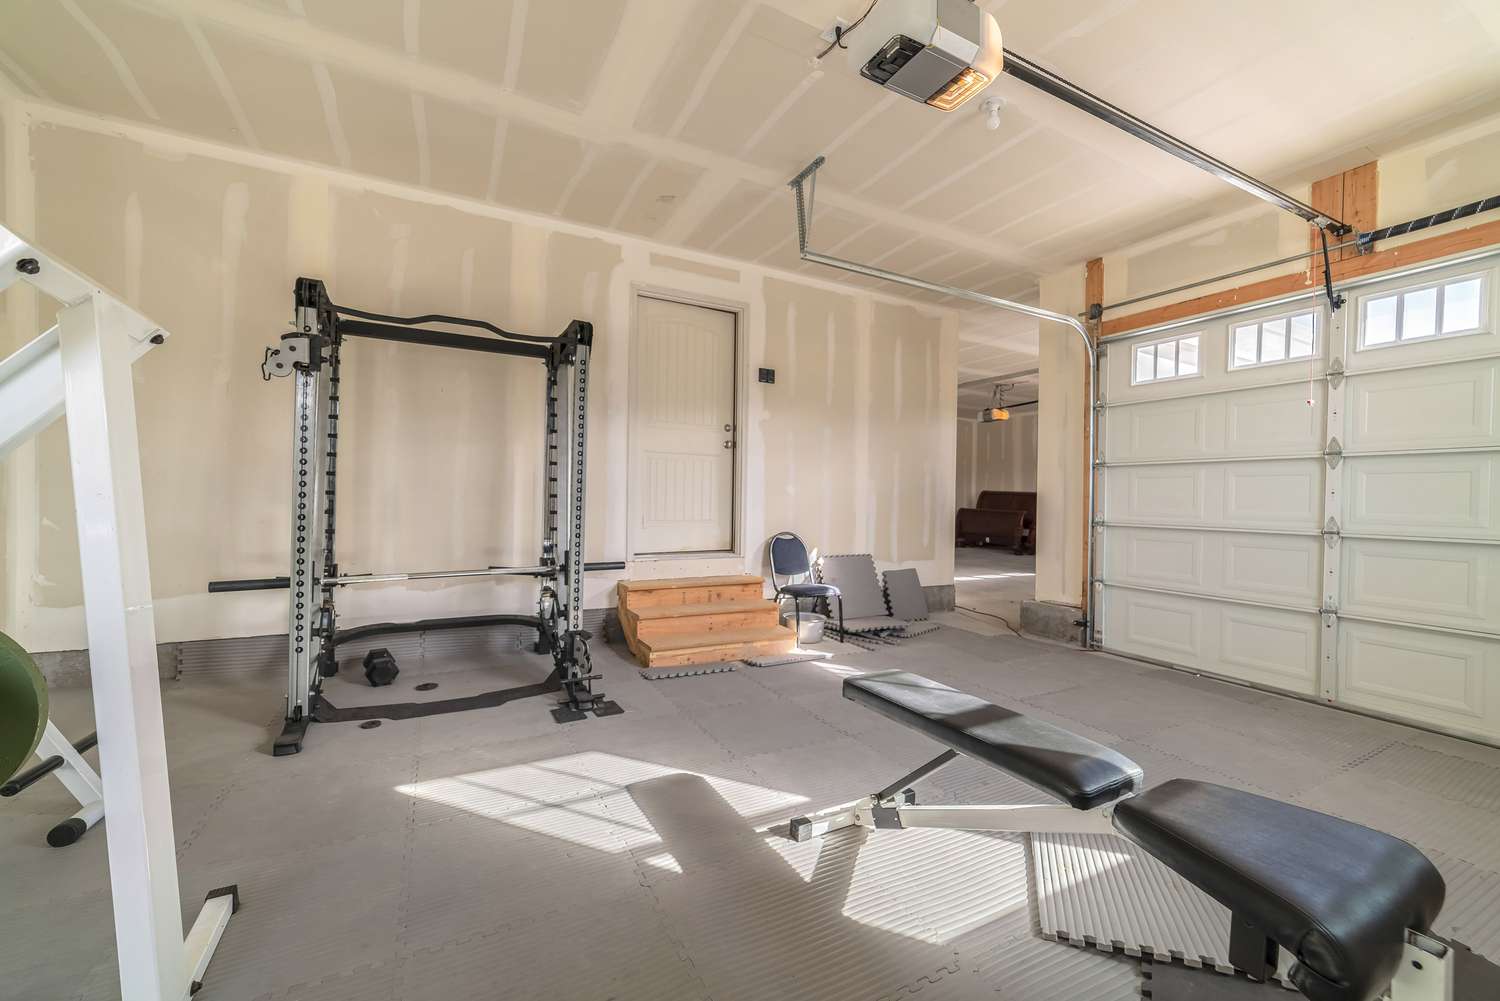 Surtido de aparatos de gimnasia y fitness en un garaje